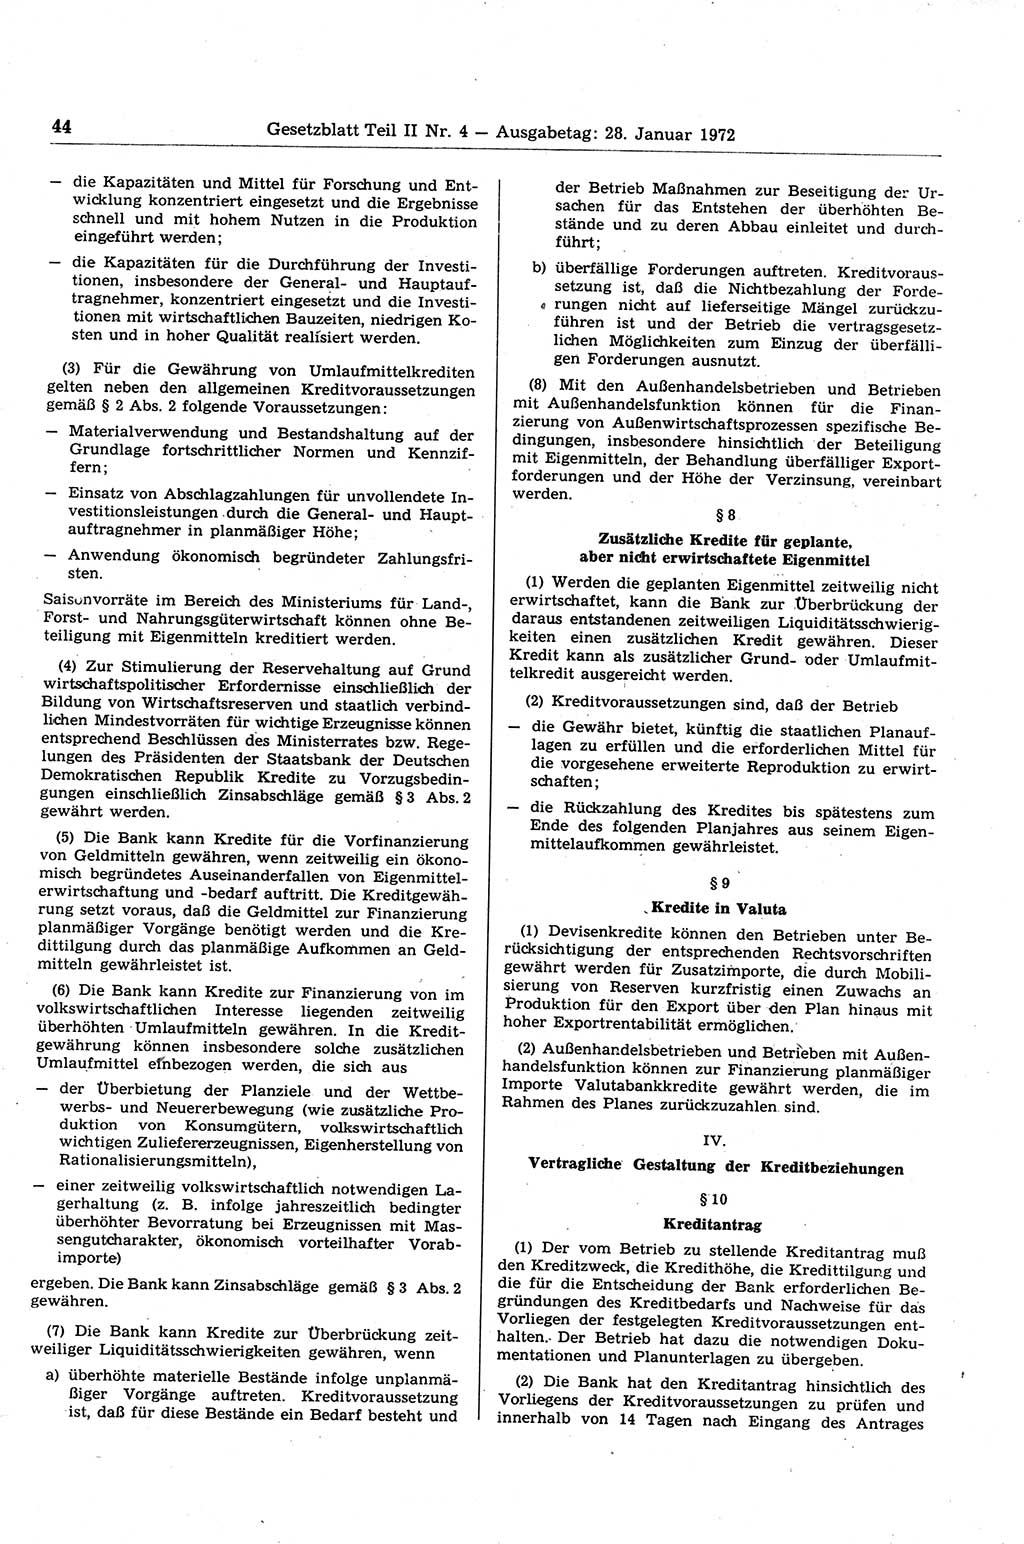 Gesetzblatt (GBl.) der Deutschen Demokratischen Republik (DDR) Teil ⅠⅠ 1972, Seite 44 (GBl. DDR ⅠⅠ 1972, S. 44)